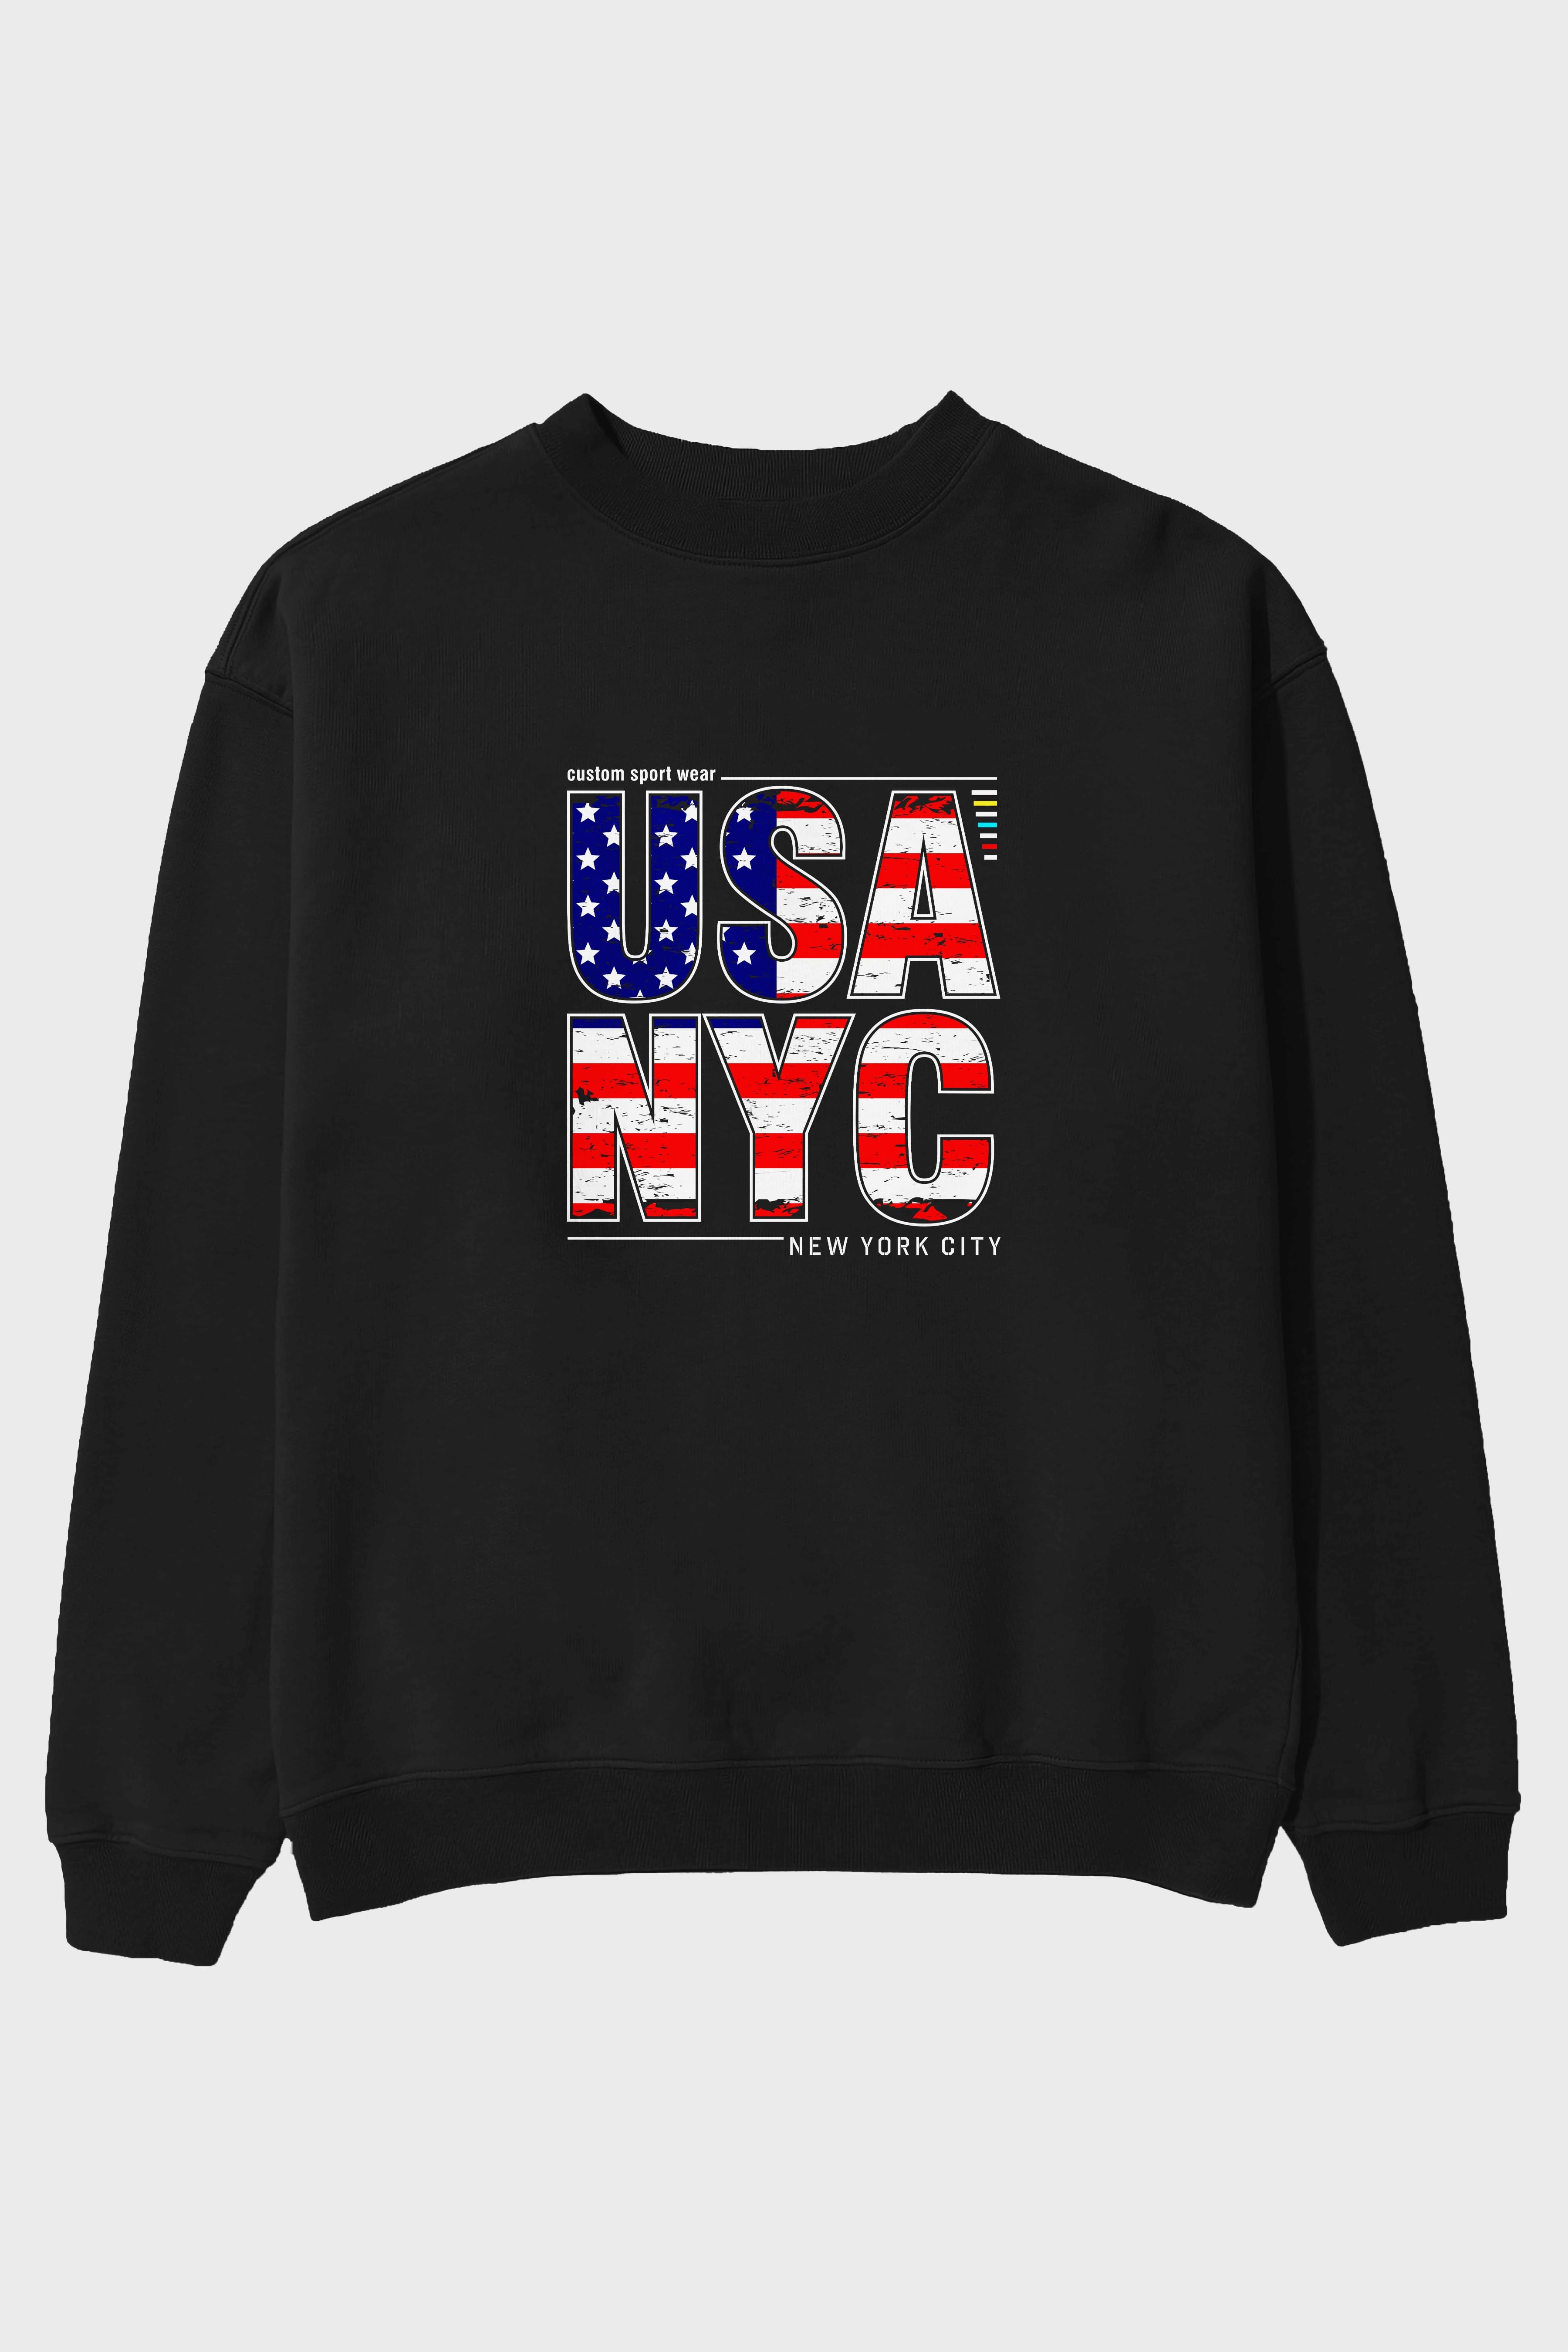 Usa NYC Ön Baskılı Oversize Sweatshirt Erkek Kadın Unisex